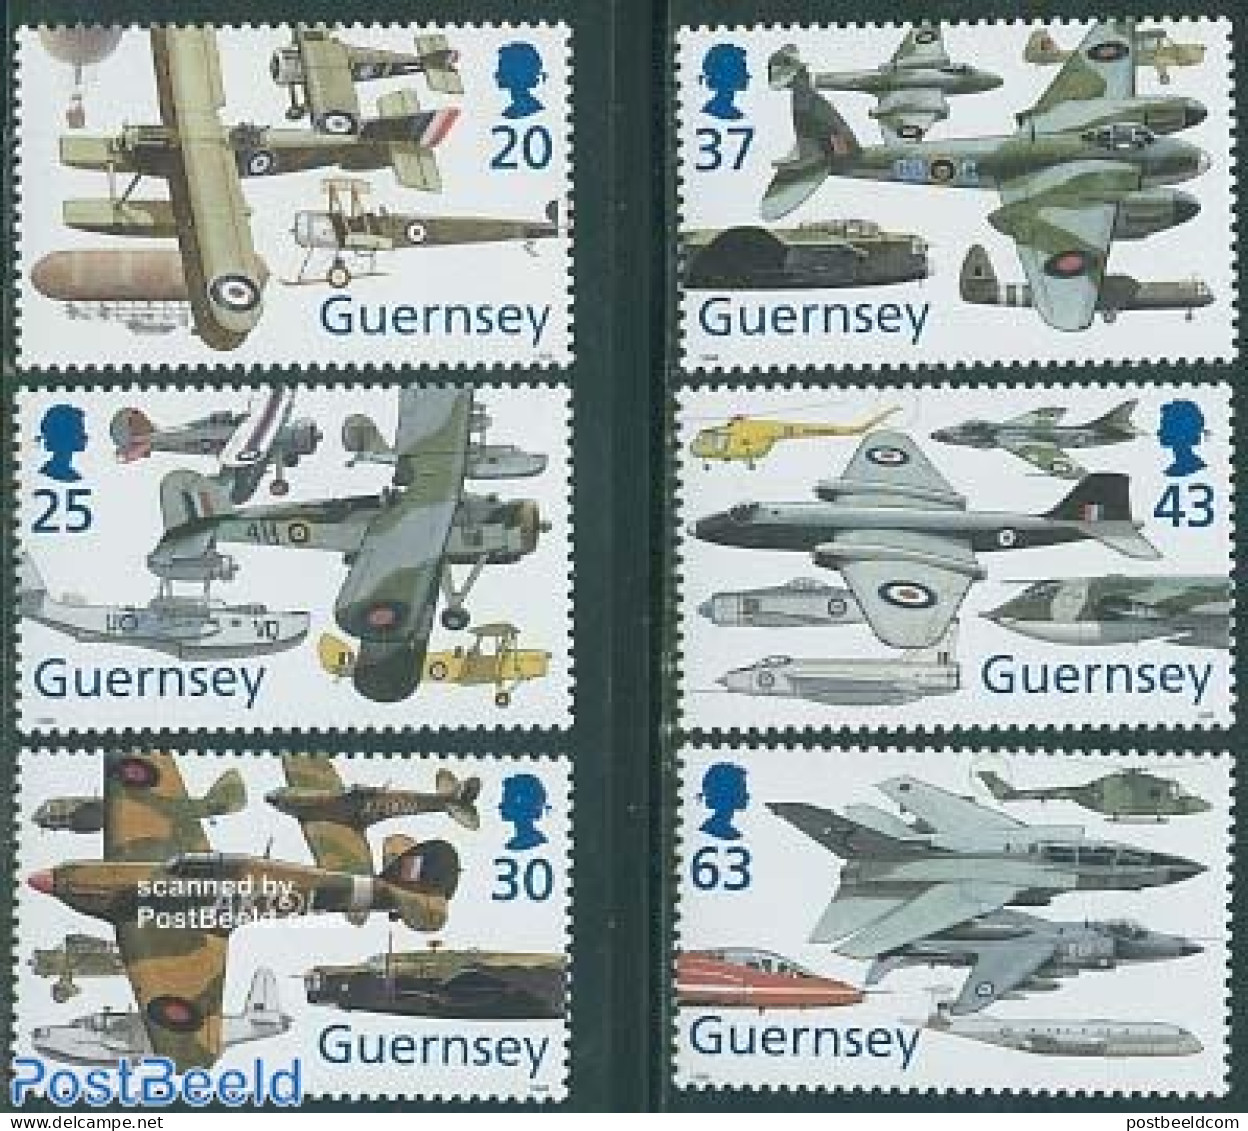 Guernsey 1998 Royal Air Force 6v, Mint NH, Transport - Aircraft & Aviation - Vliegtuigen